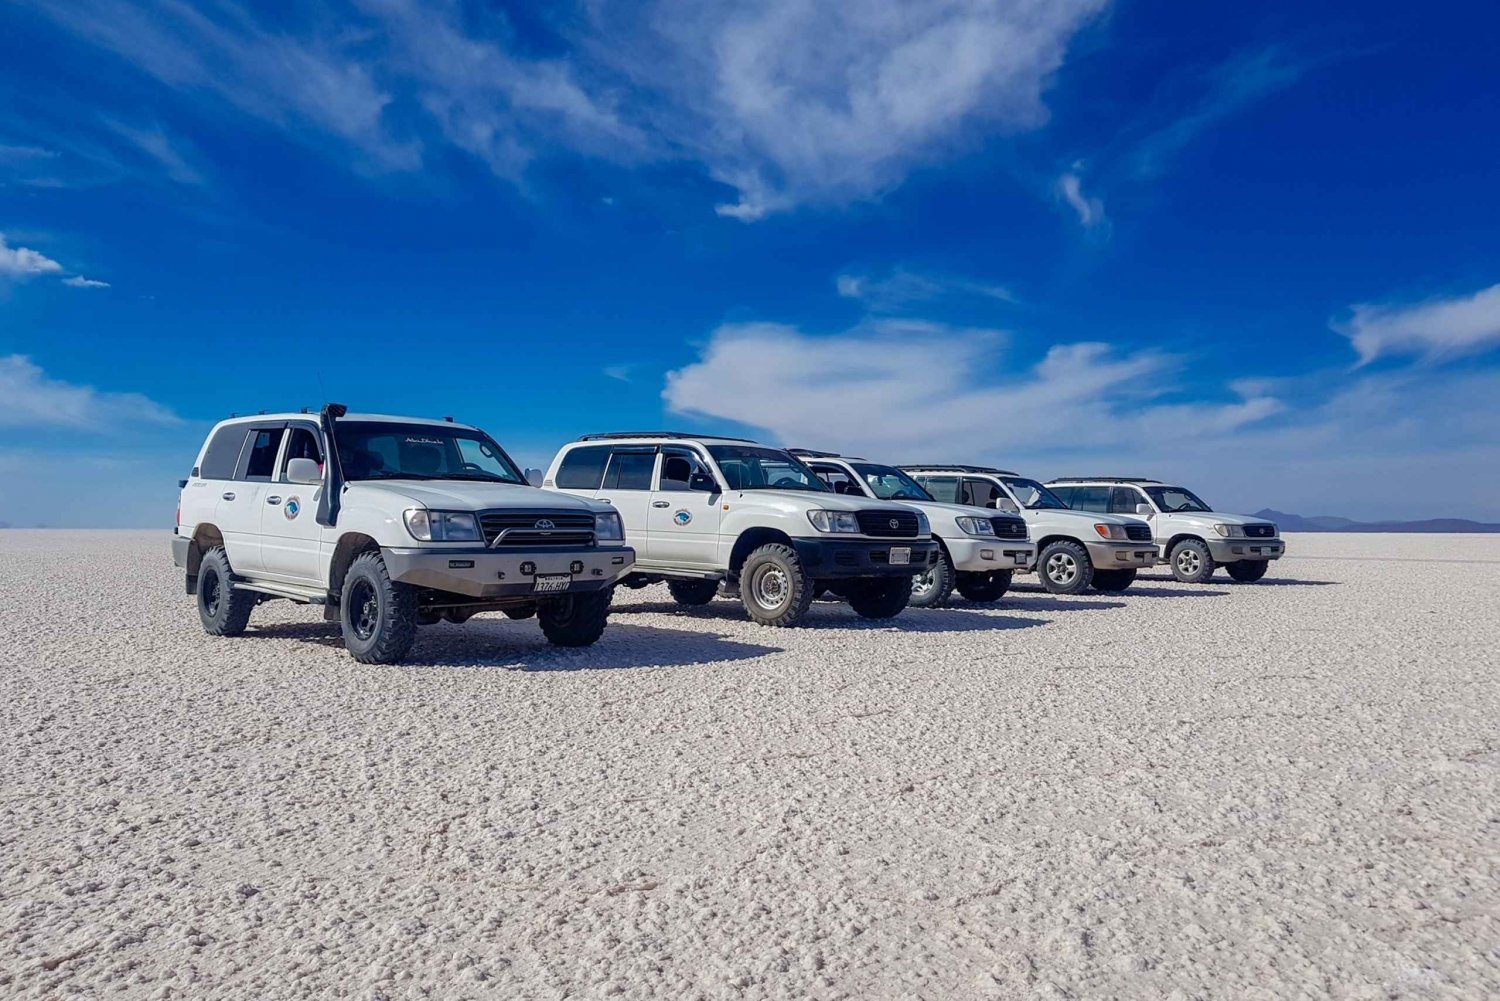 From San Pedro de Atacama: Uyuni Salt Flats 3-Day Tour